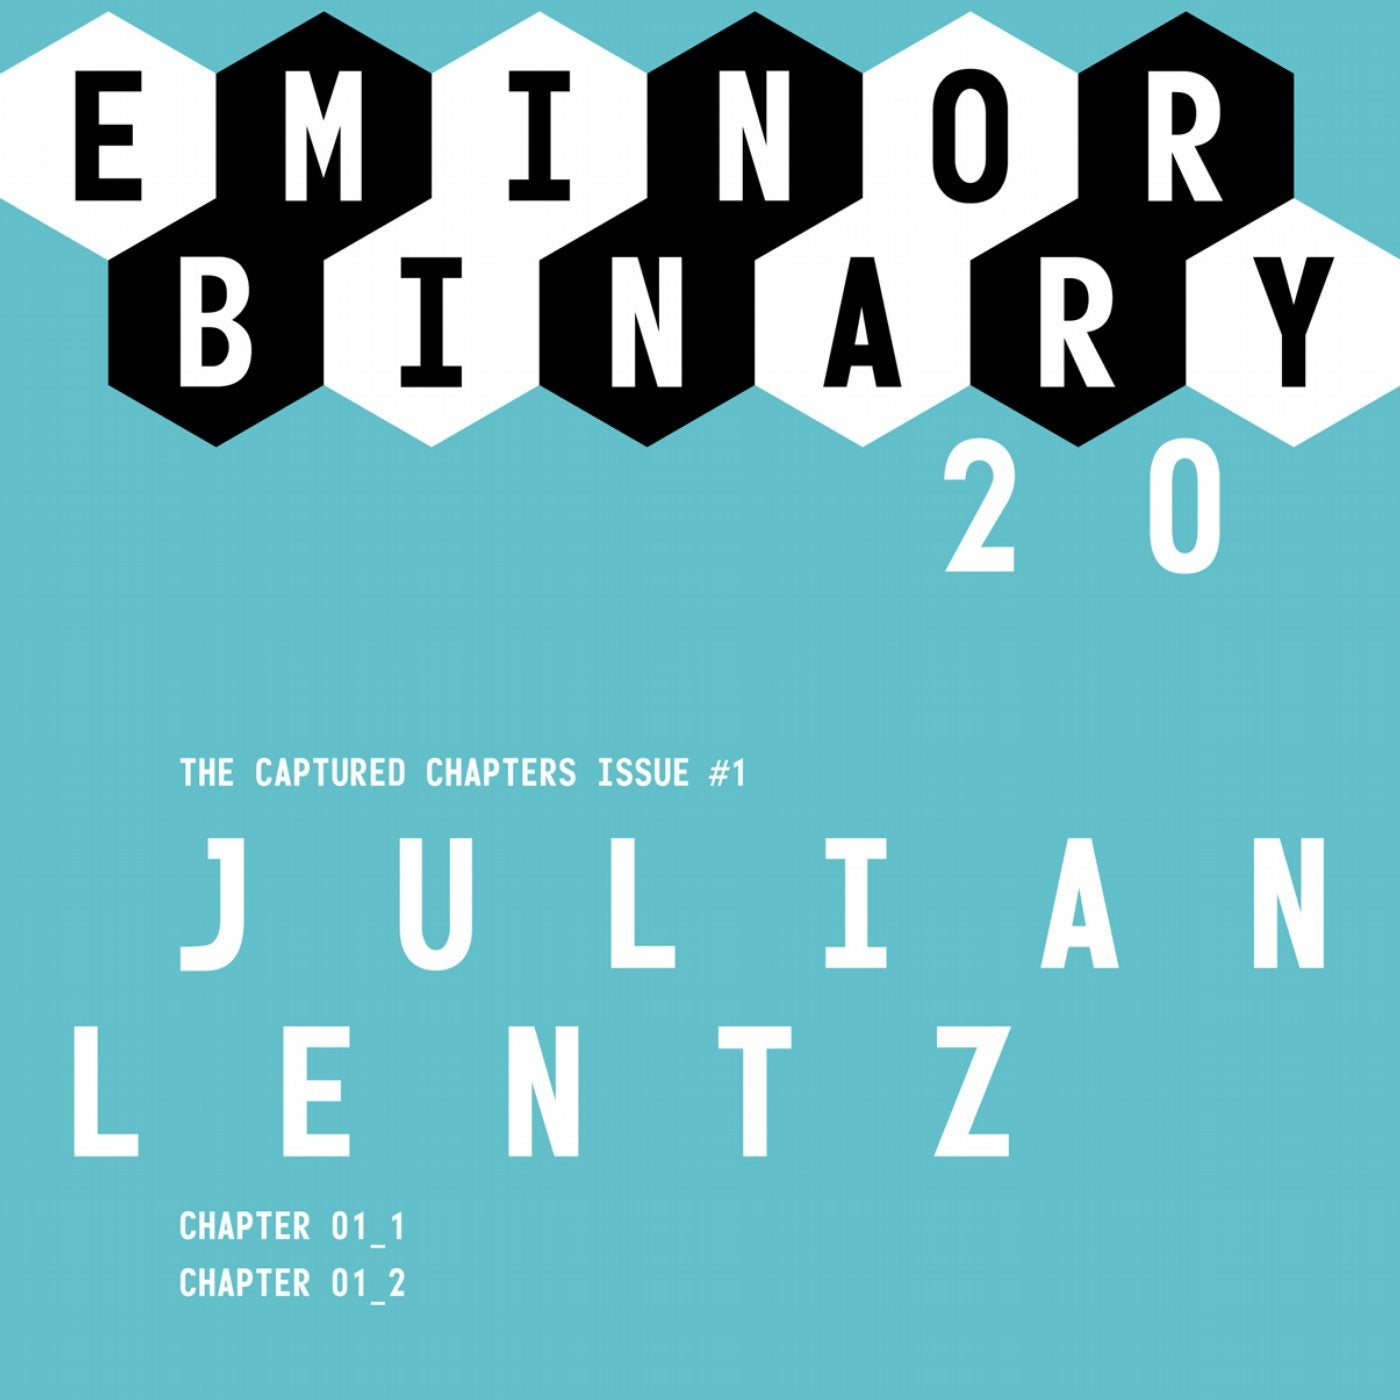 EMINOR Binary 20